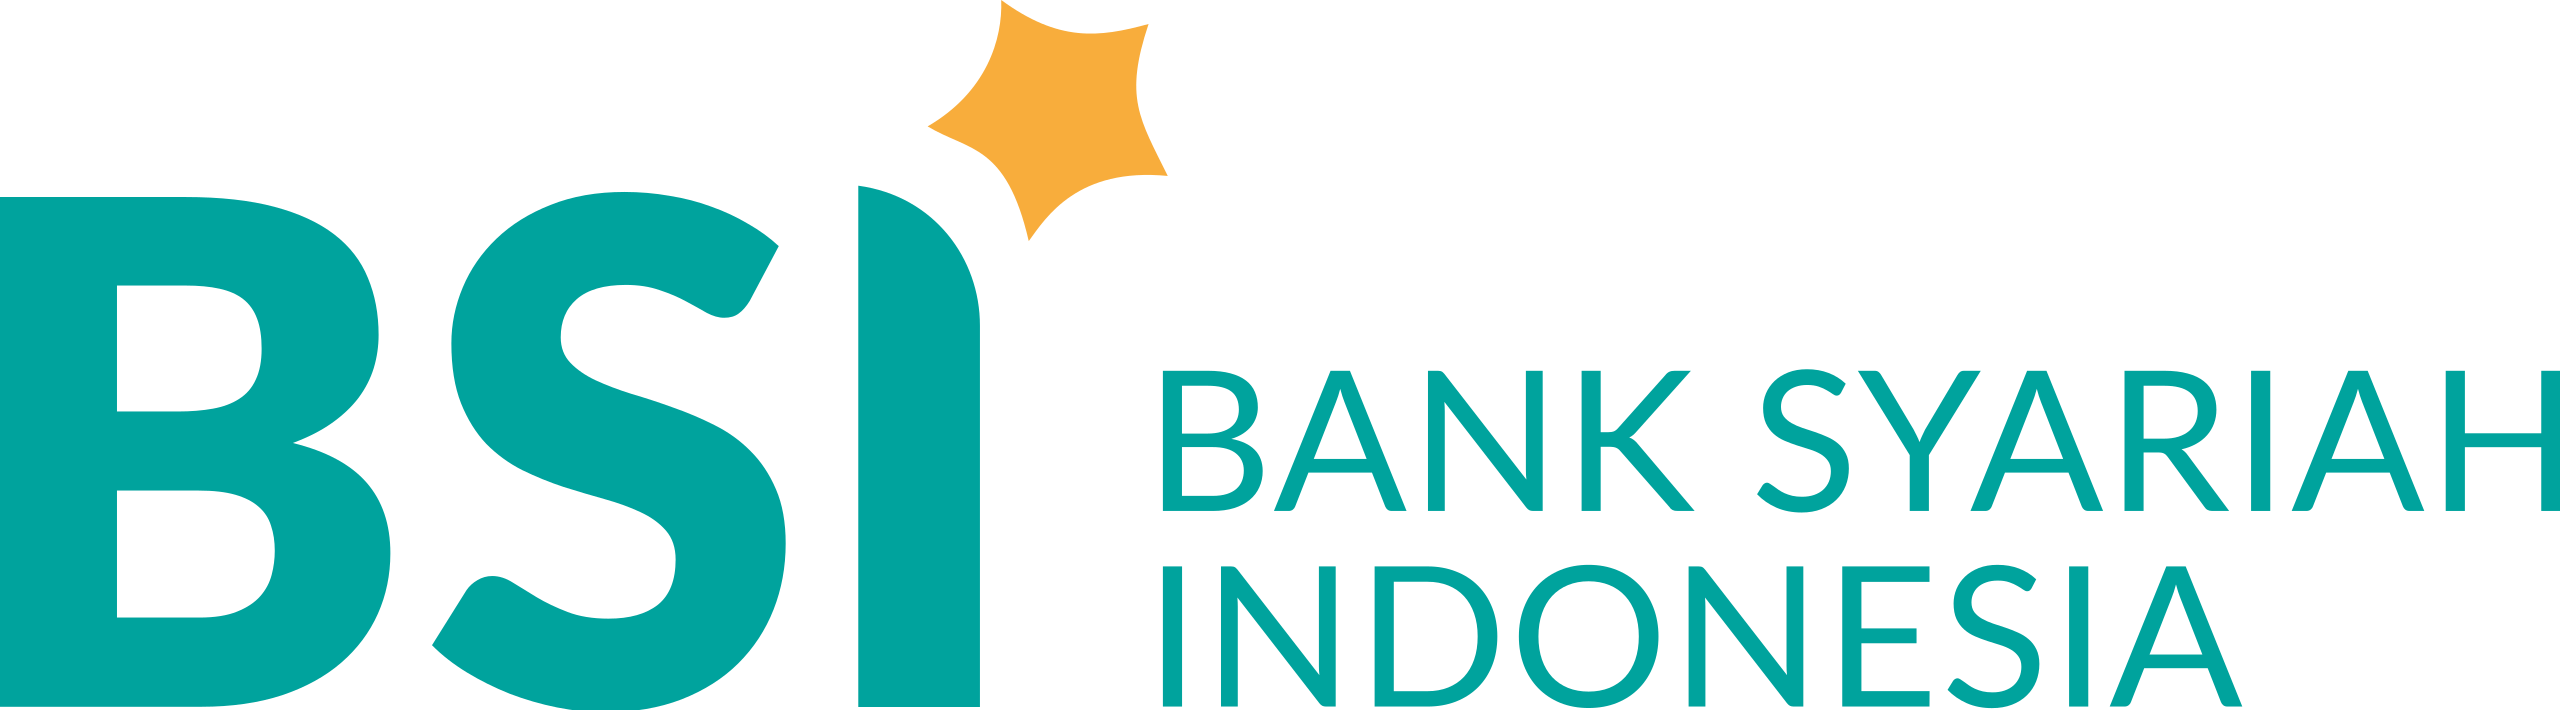 Bank_Syariah_Indonesia.svg_.png